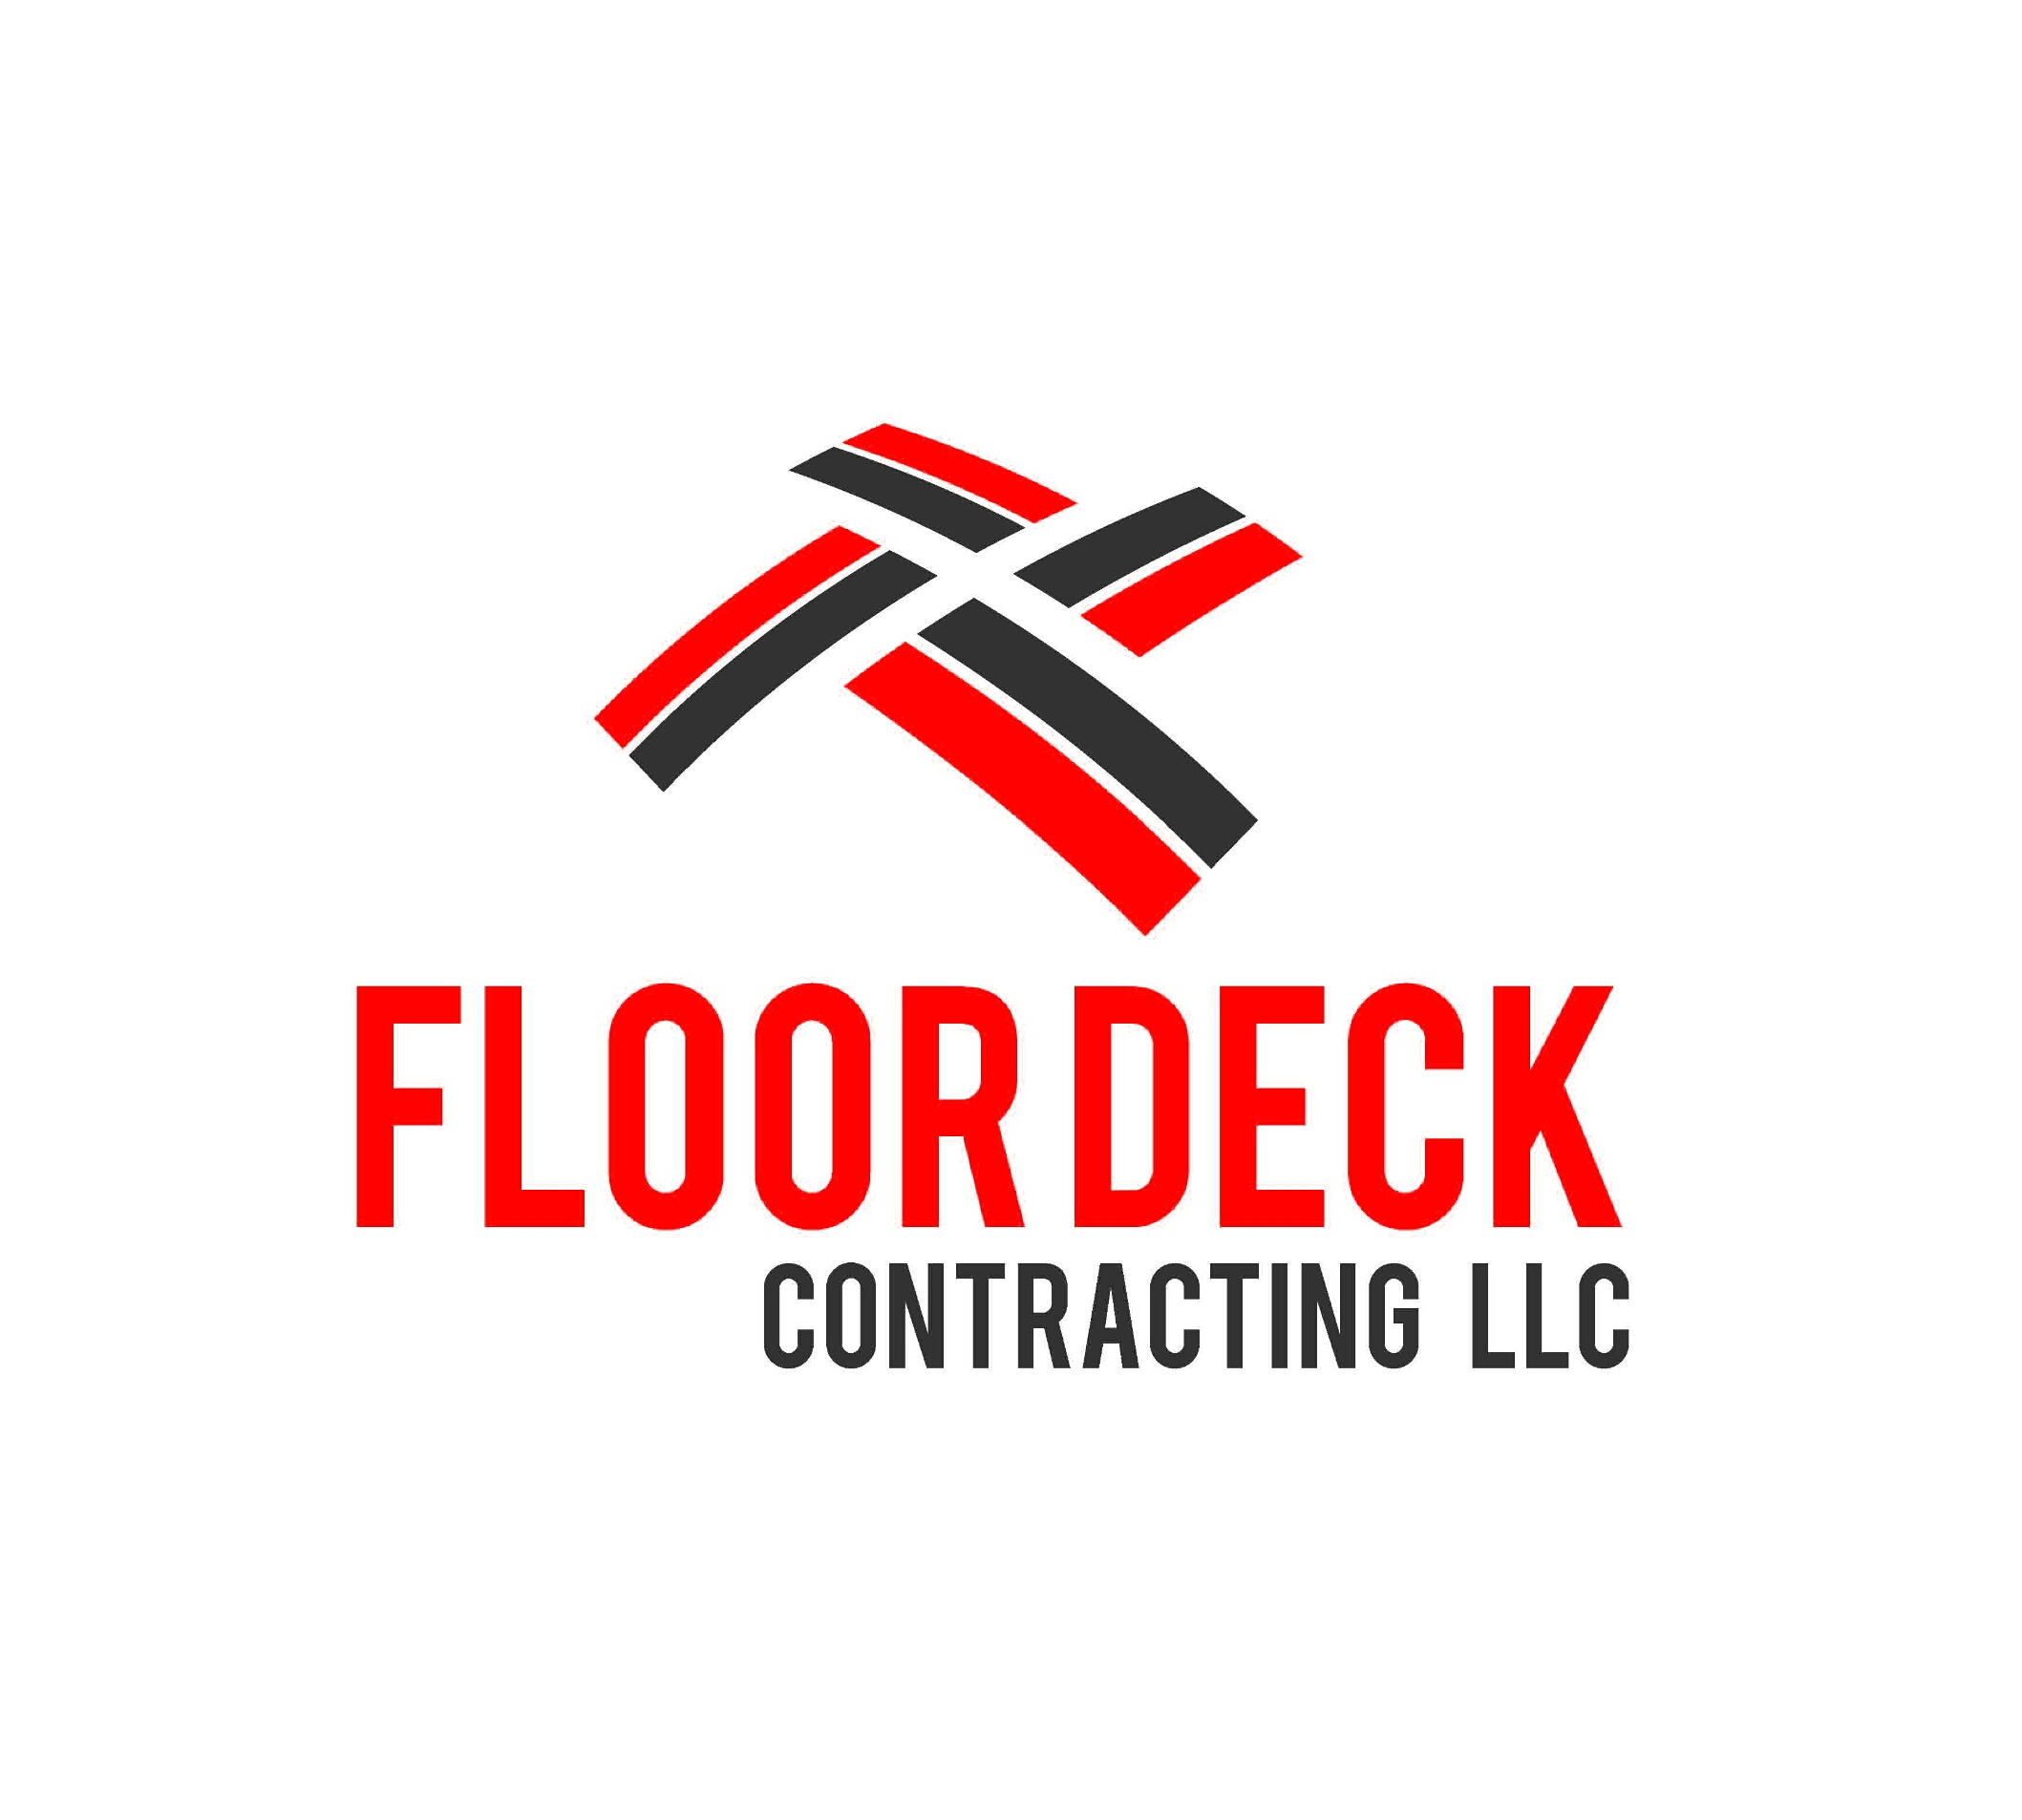 Floor Deck Contracting LLC